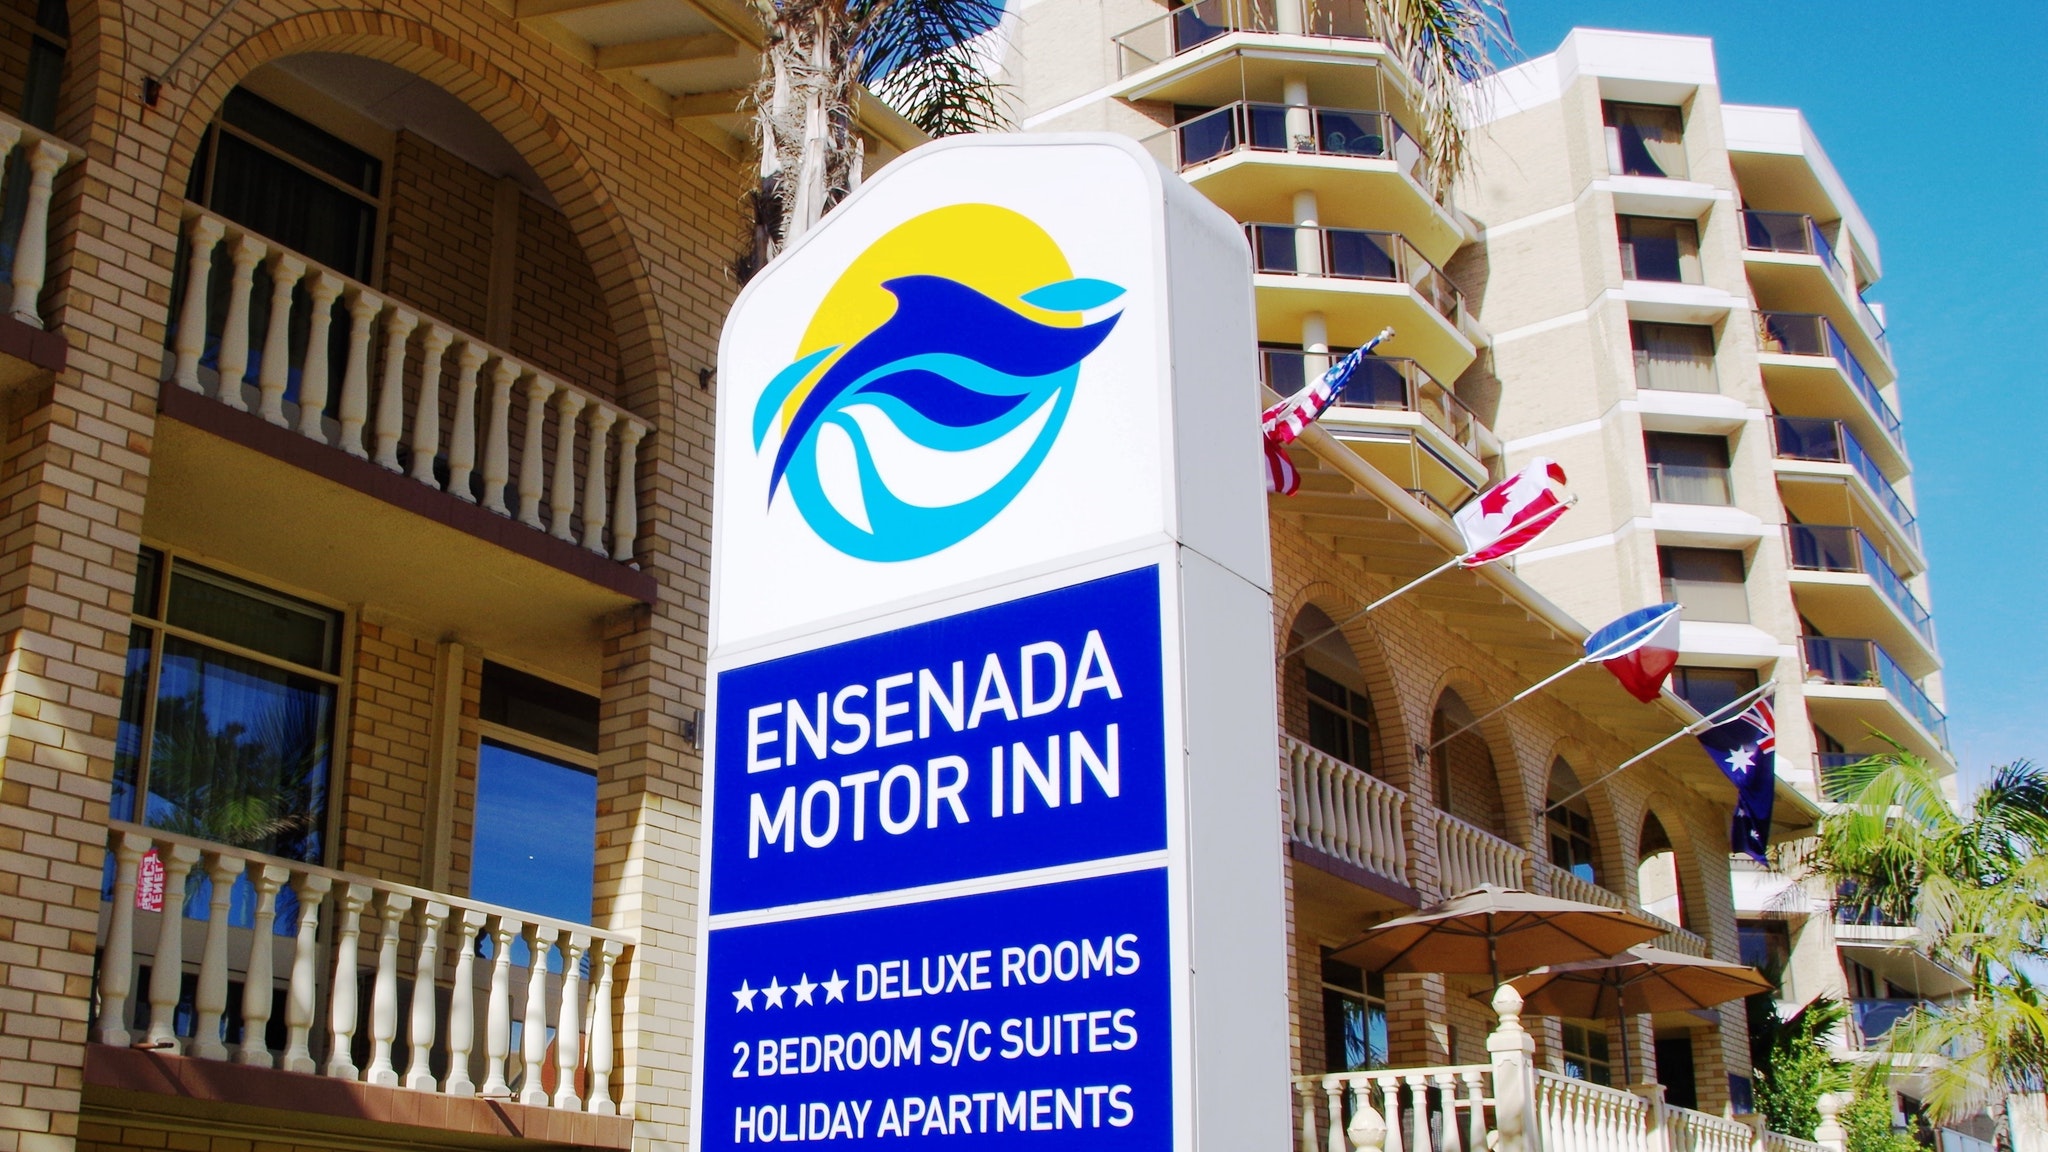 Ensenada Motor Inn And Suites - Accommodation Mt Buller 11